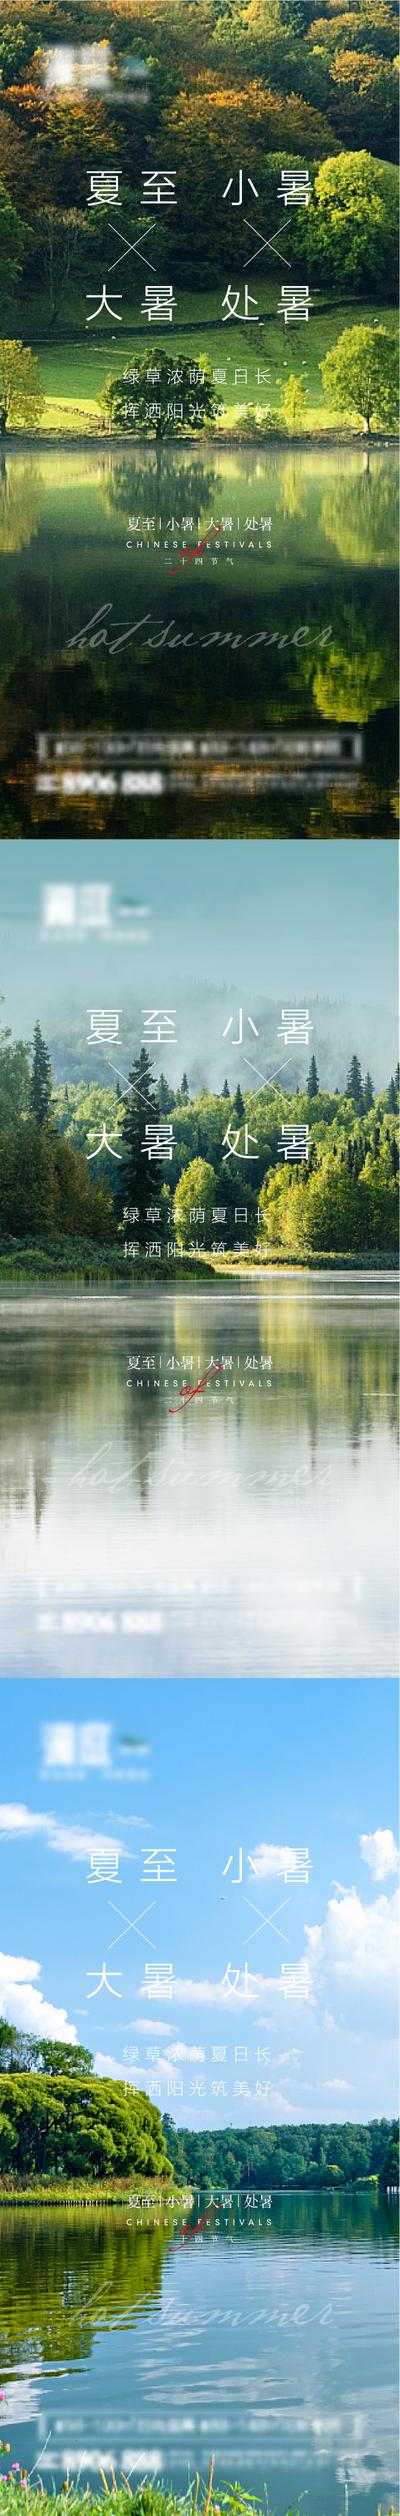 南门网 海报 房地产 二十四节气  夏至 小暑 大暑 处暑 系列 森林 生态 湖